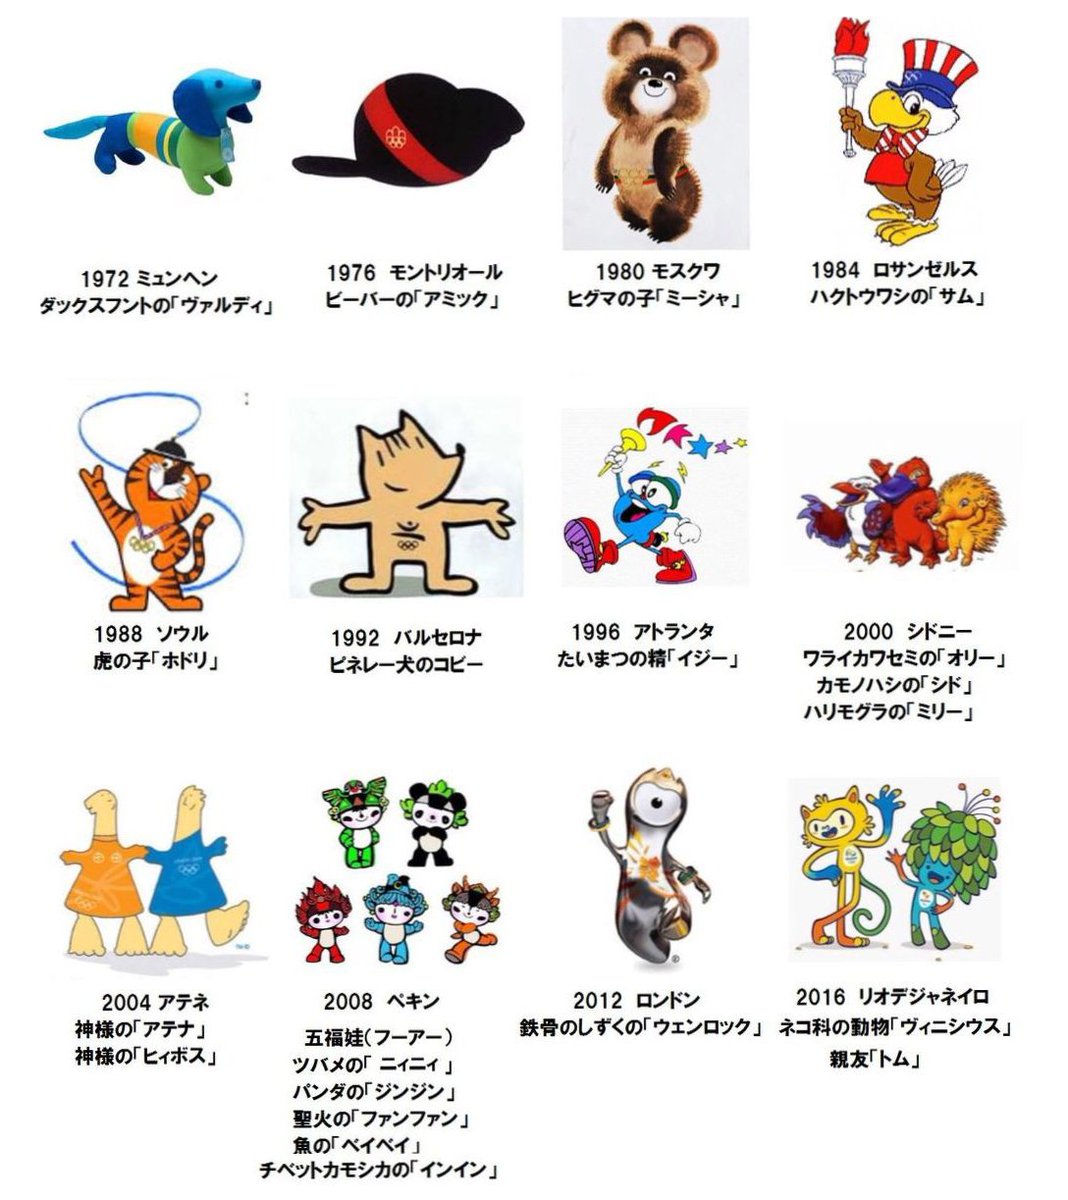 おばけ 東京オリンピックのマスコット こう歴代のマスコットと並べると今までで1番良いのではと思う T Co Yza2kc91cf Twitter